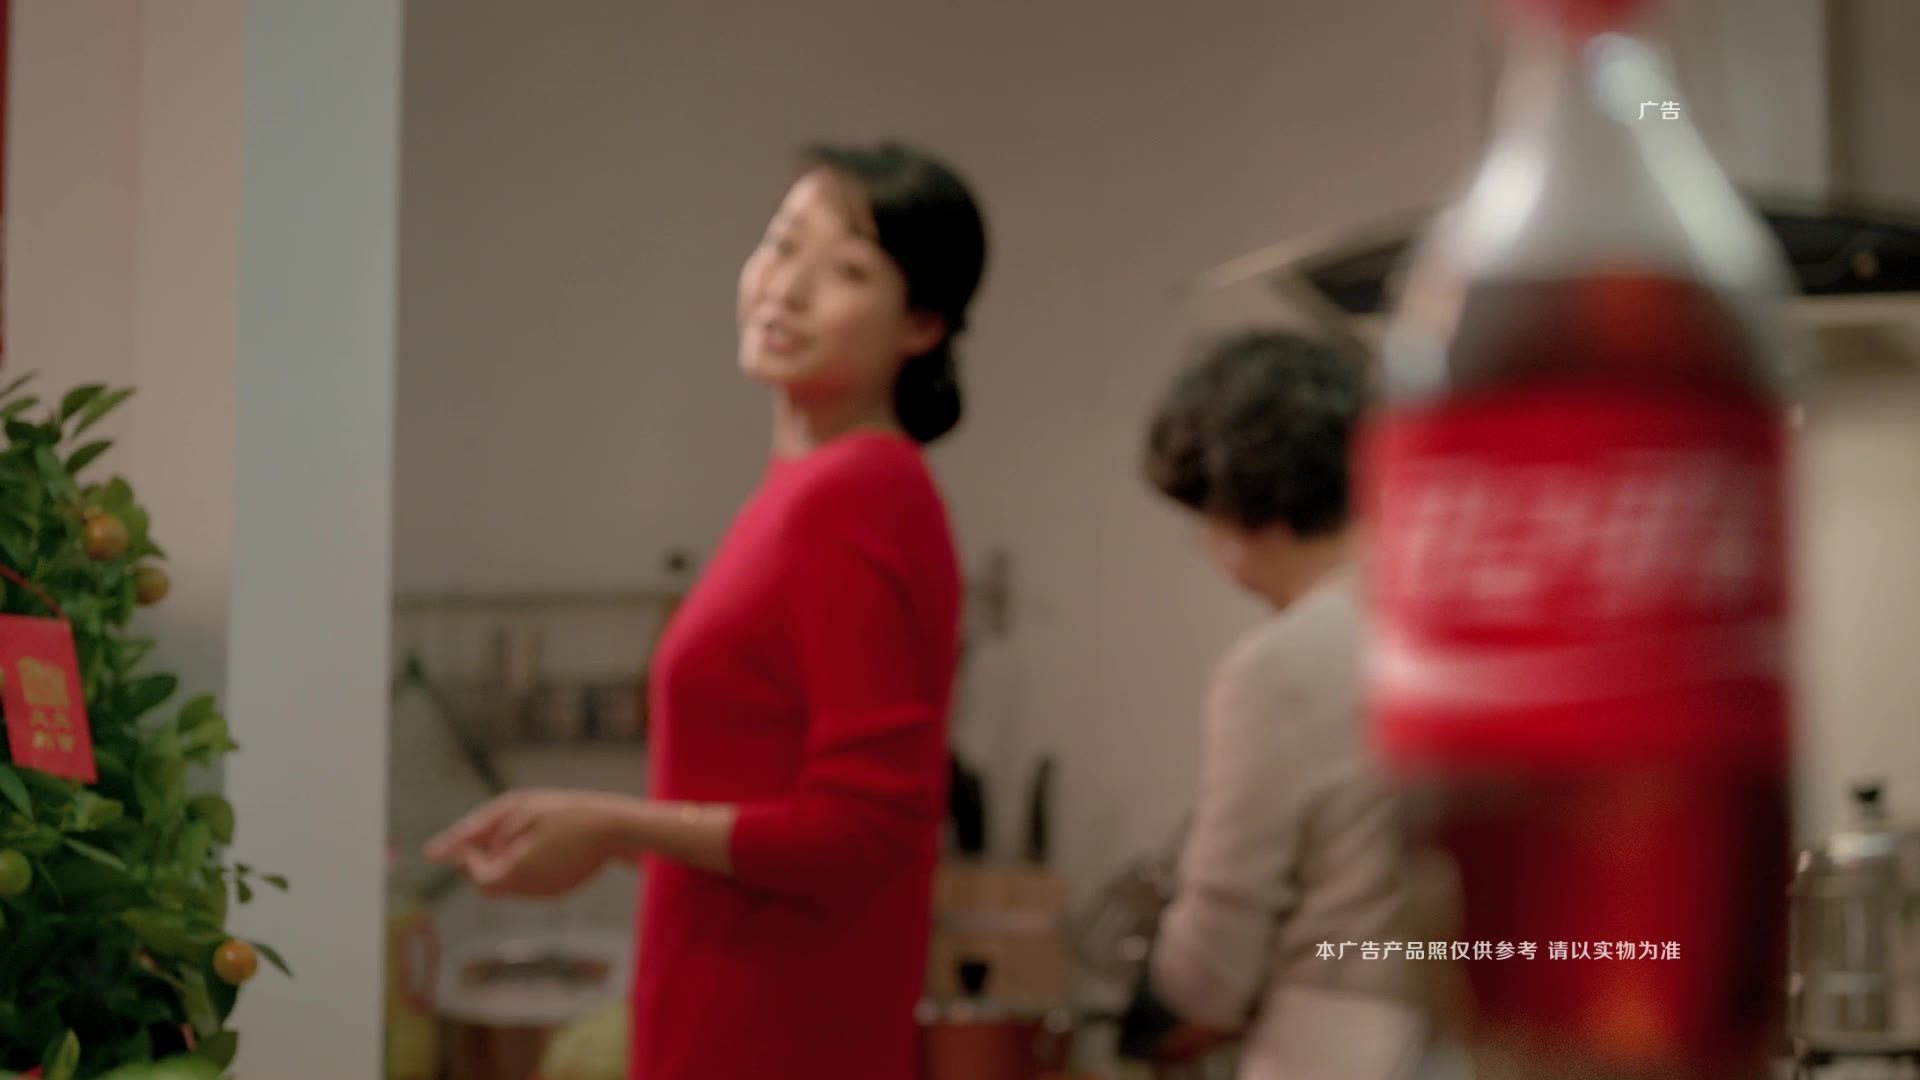 可口可乐 - Coke CNY 2016